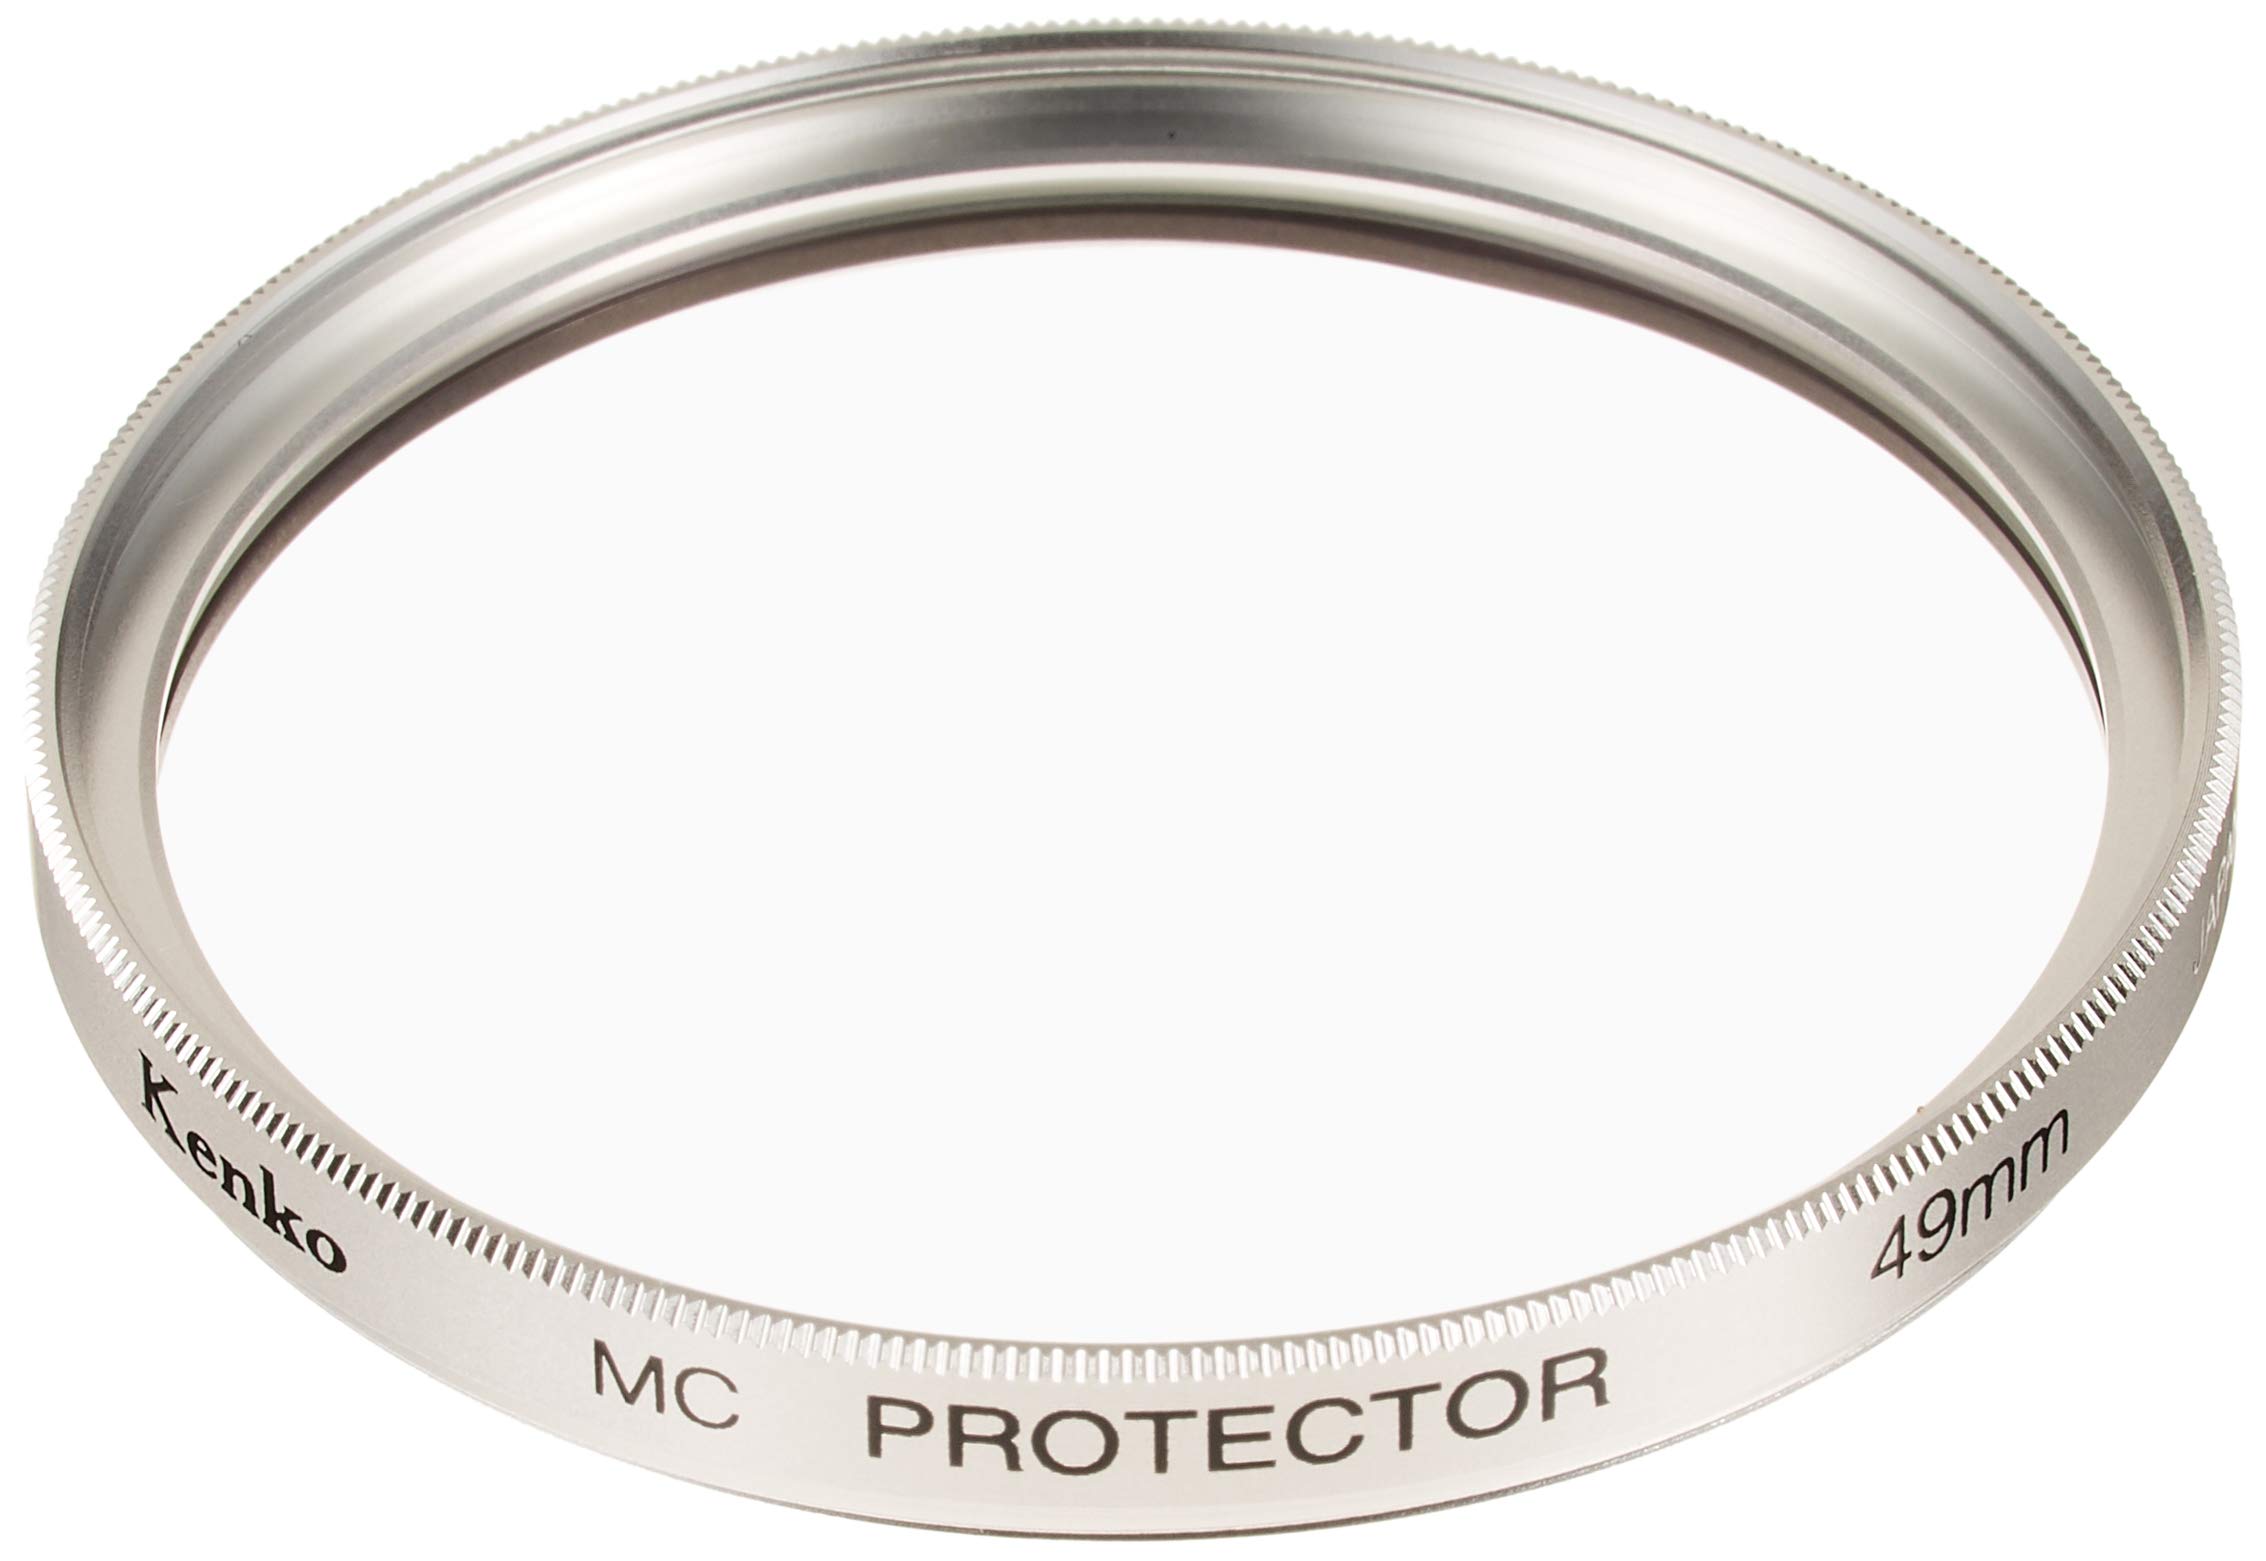 Kenko レンズフィルター MC プロテクター 49mm シルバー枠 レンズ保護用 デジタルカメラ対応 049518